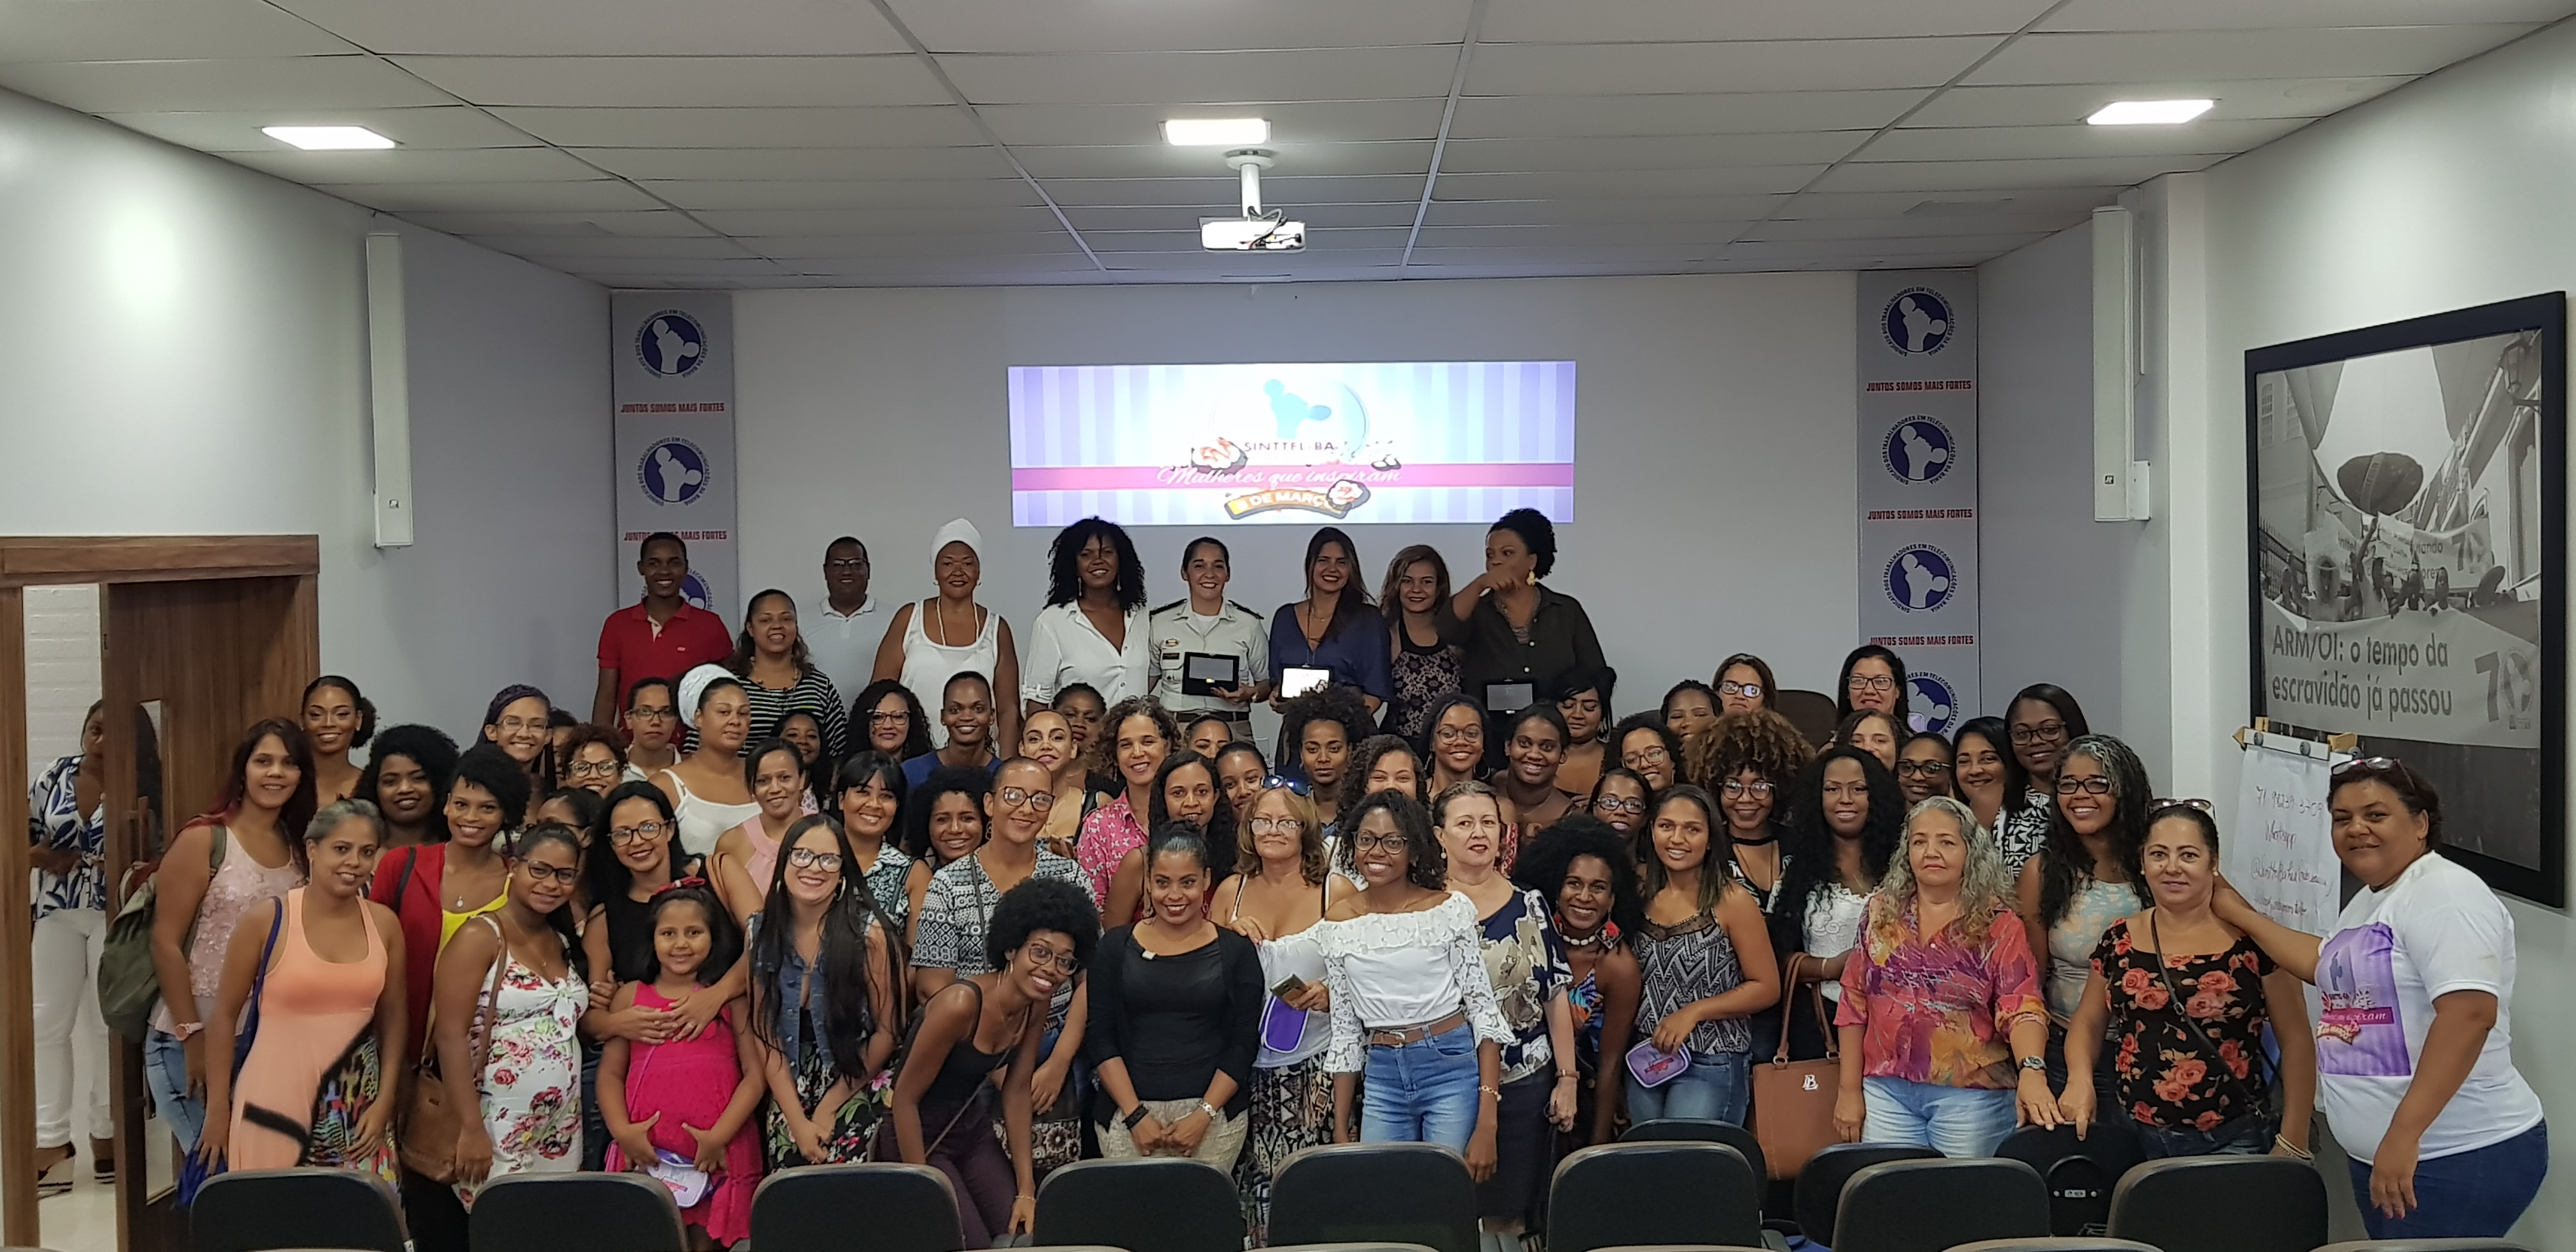 Sinttel realiza evento ‘Mulheres que Inspiram’, em homenagem às mulheres telefônicas